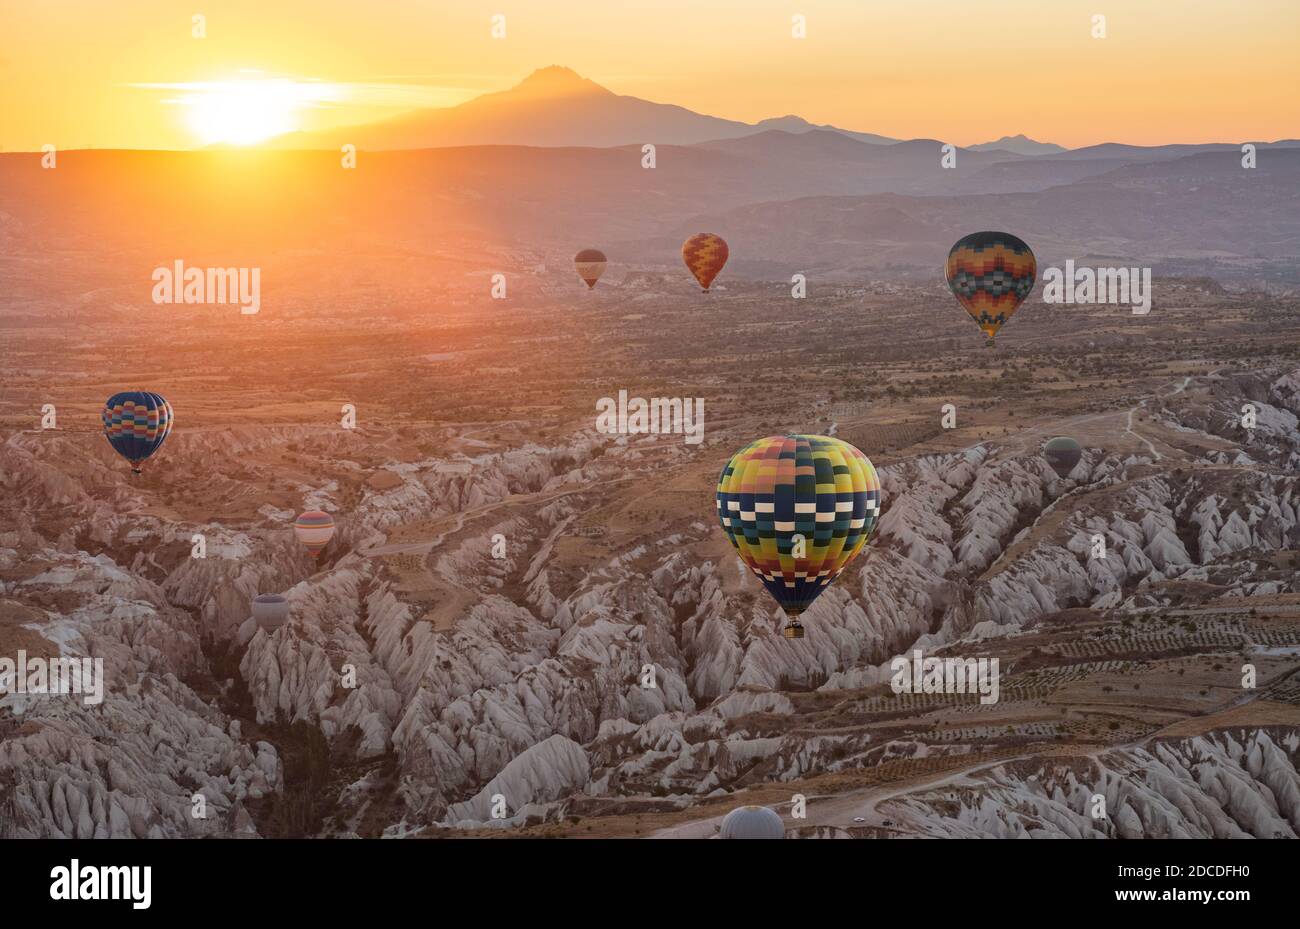 Heißluftballon fliegt über Kappadokien Region, Goreme, Türkei. Große Touristenattraktion - Sonnenaufgang Ballonfahrten über den Kappadokien Tälern Stockfoto